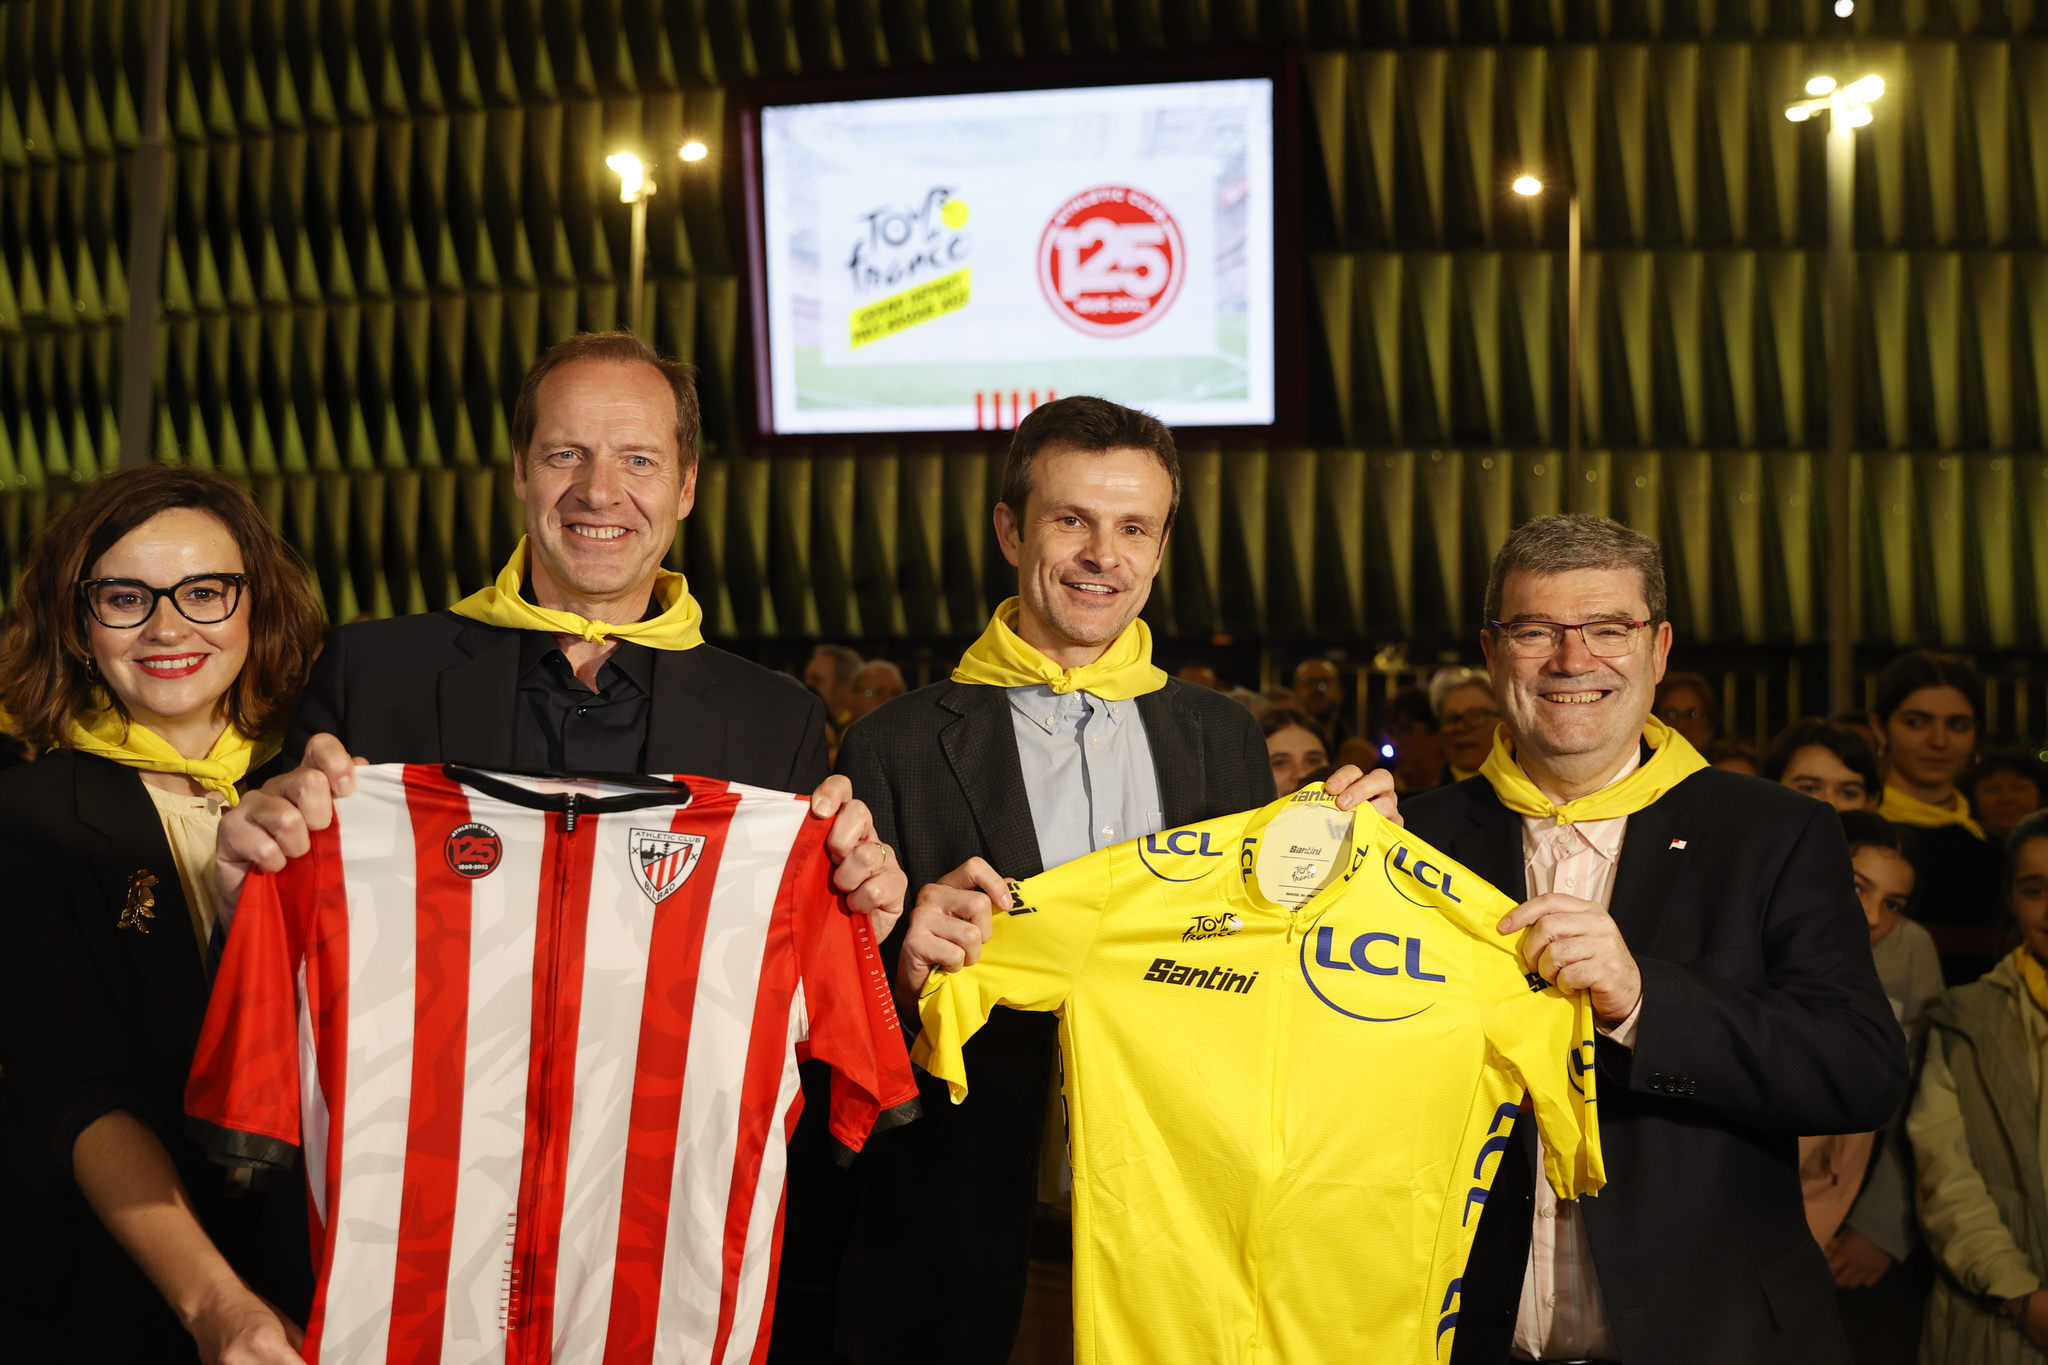 Aburto y Uriarte sostienen un maillot de líder del Tour y Prudhomme, director de la prueba, un maillot del Athletic en uno de los actos del pasado miércoles.